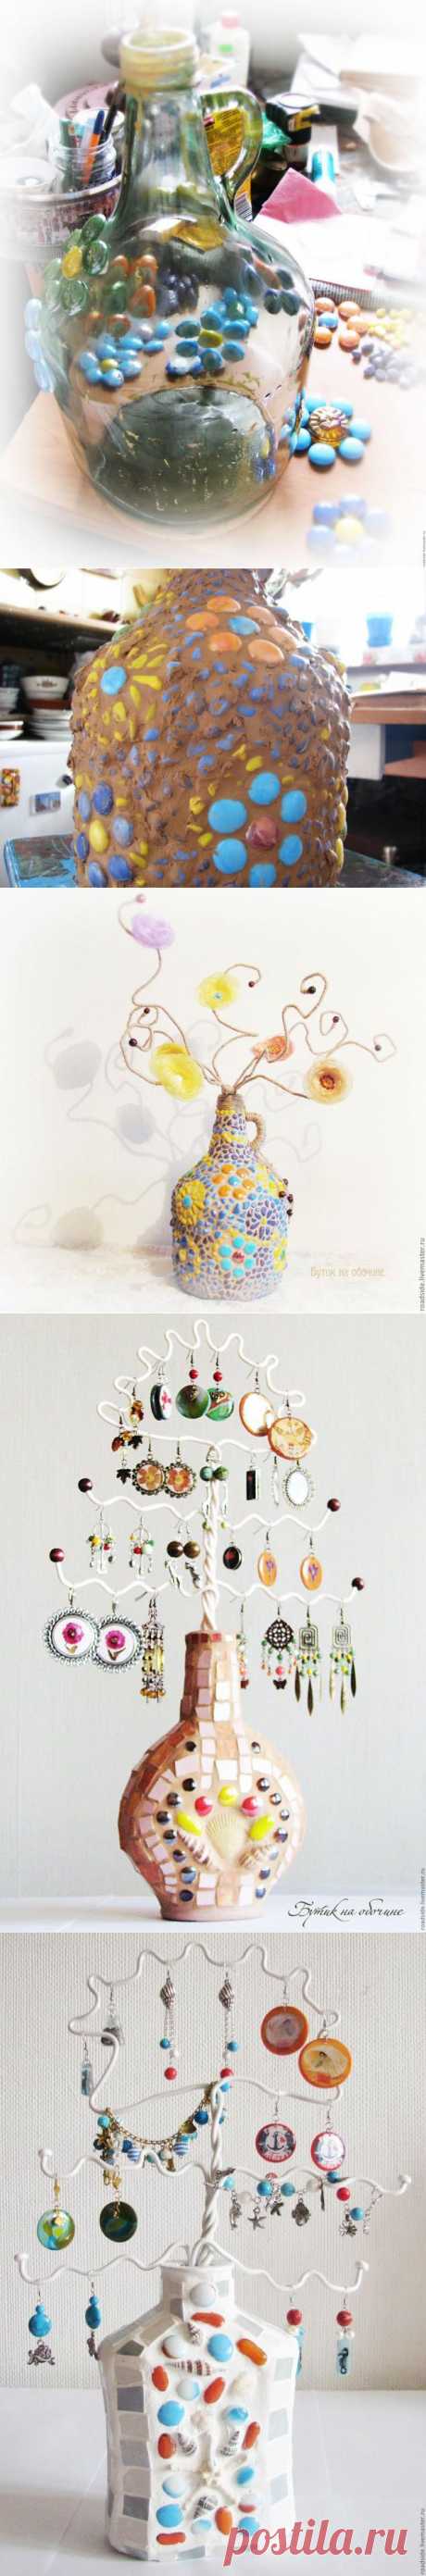 Мозаичное дерево - Ярмарка Мастеров - ручная работа, handmade